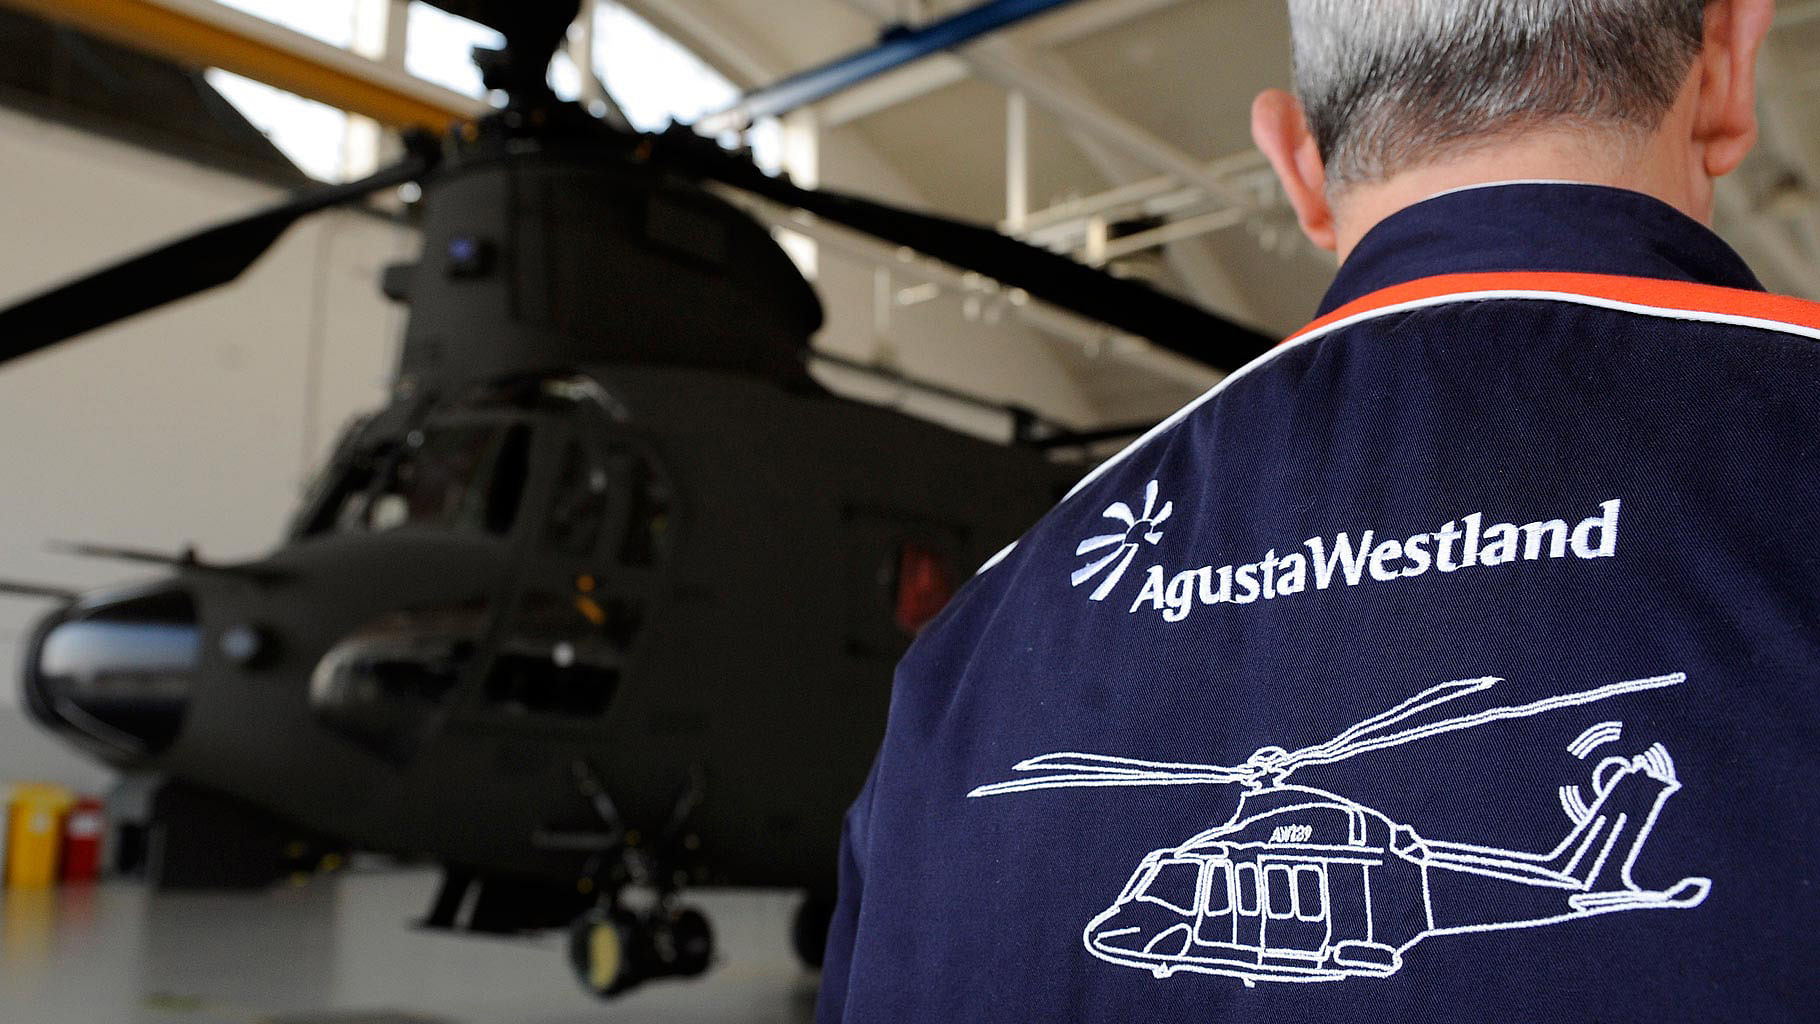 Sonia Gandhi is under attack in the Agusta-Westland scam. (Photo: Reuters)